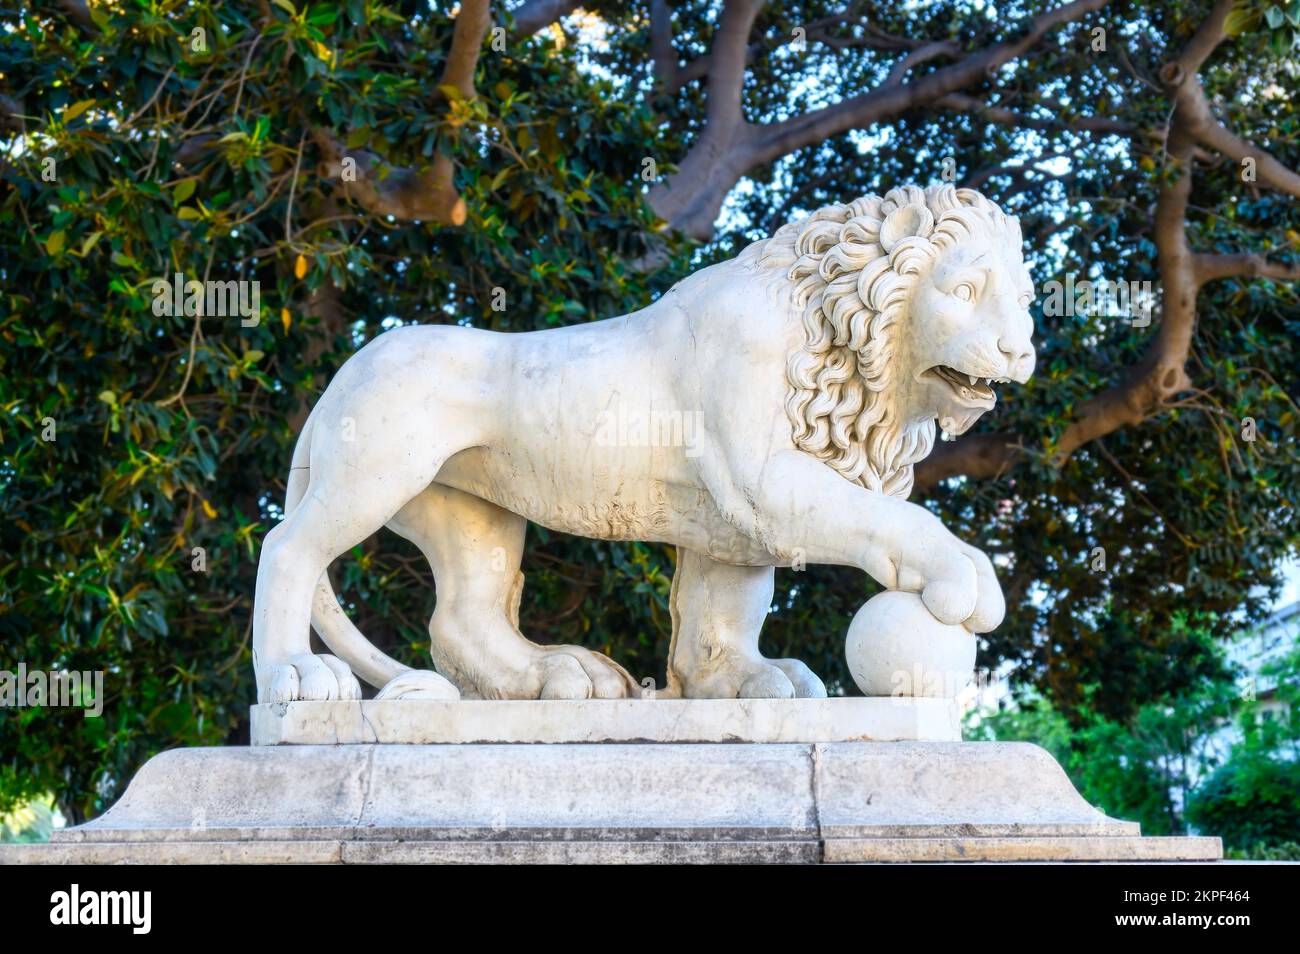 Alicante, España - 12 de septiembre de 2022: Escultura en piedra natural de un león exquisitamente tallada en el Parque Canalejas. Foto de stock